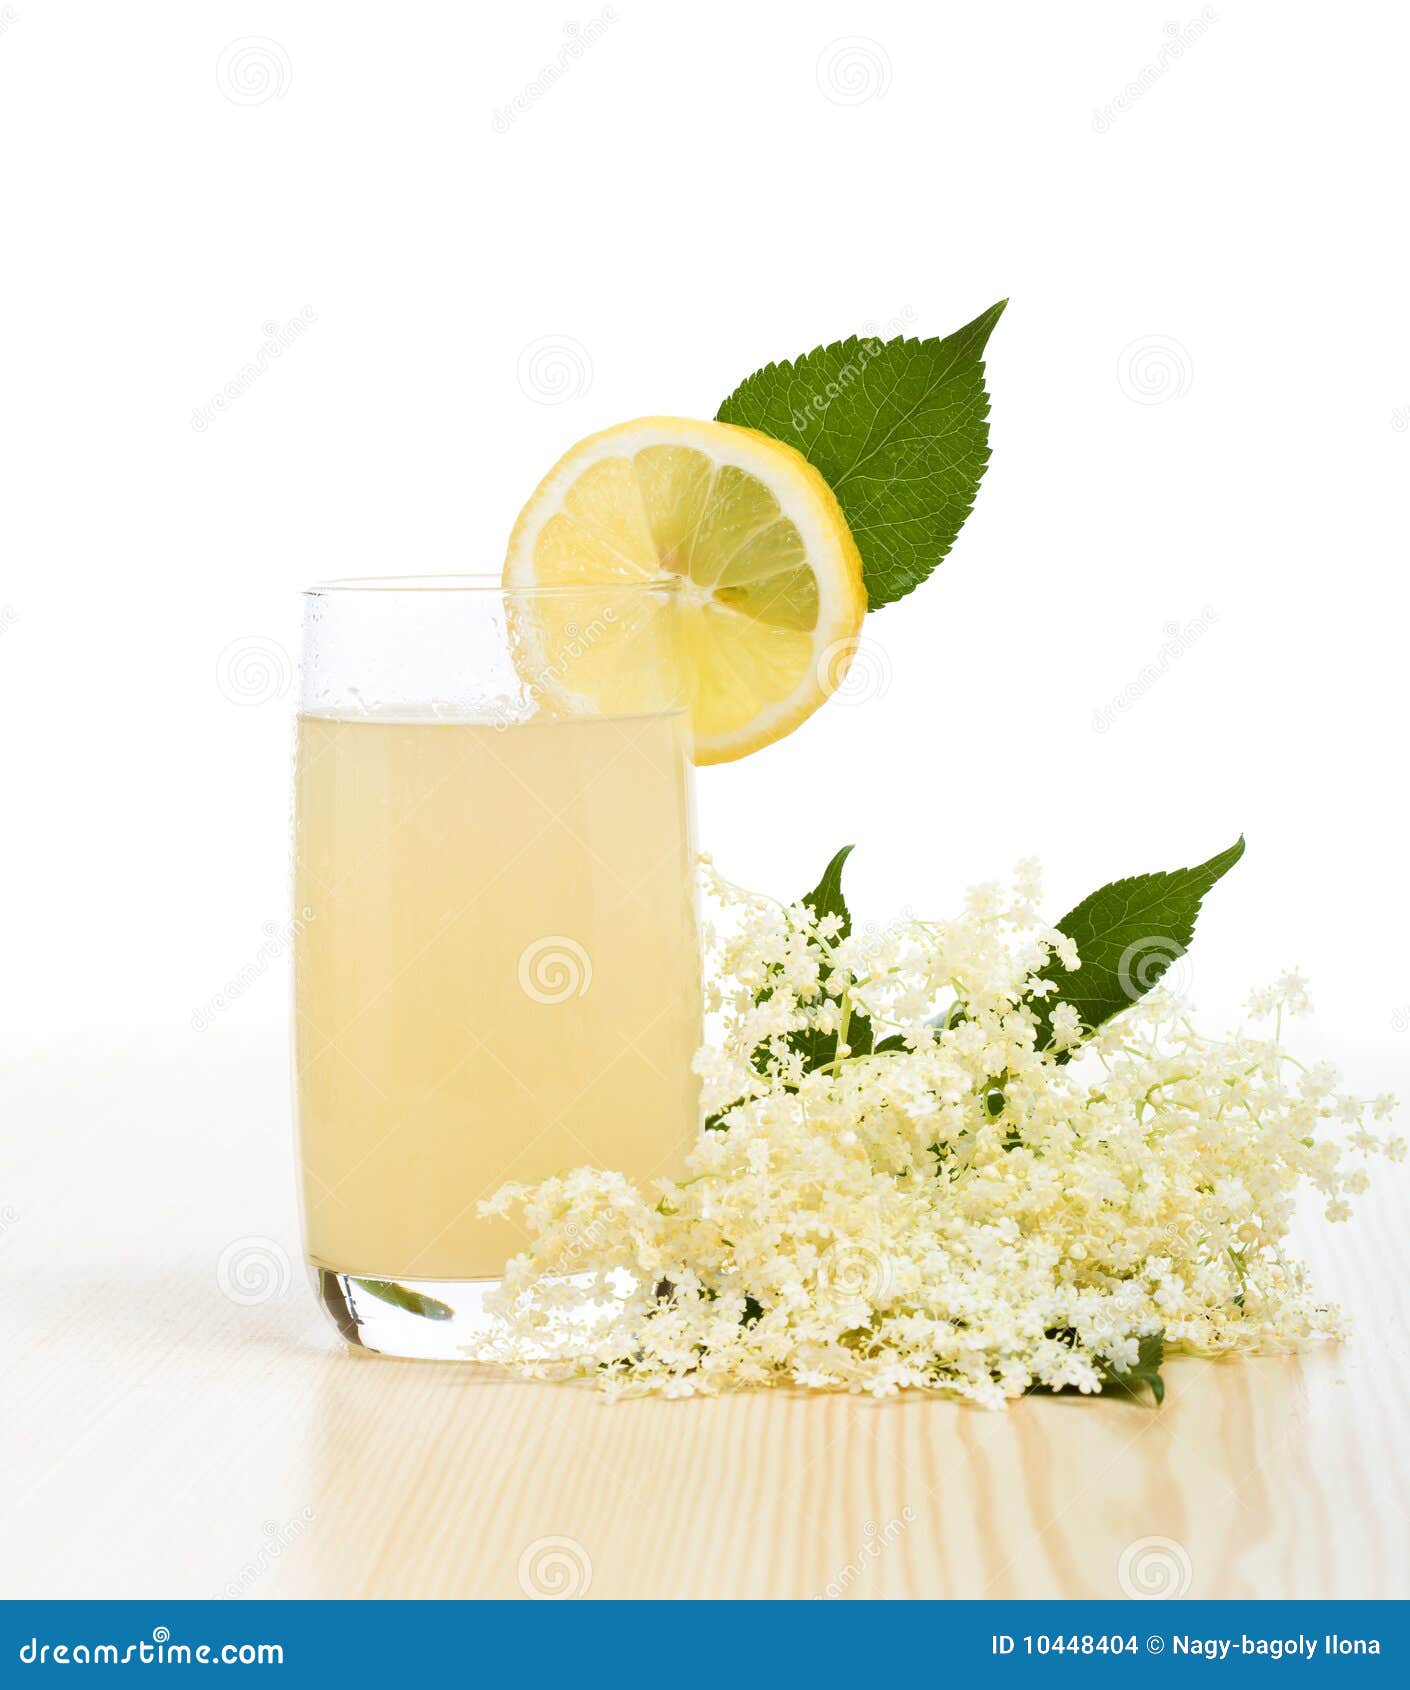 elderberry flower flavored summer refreshment